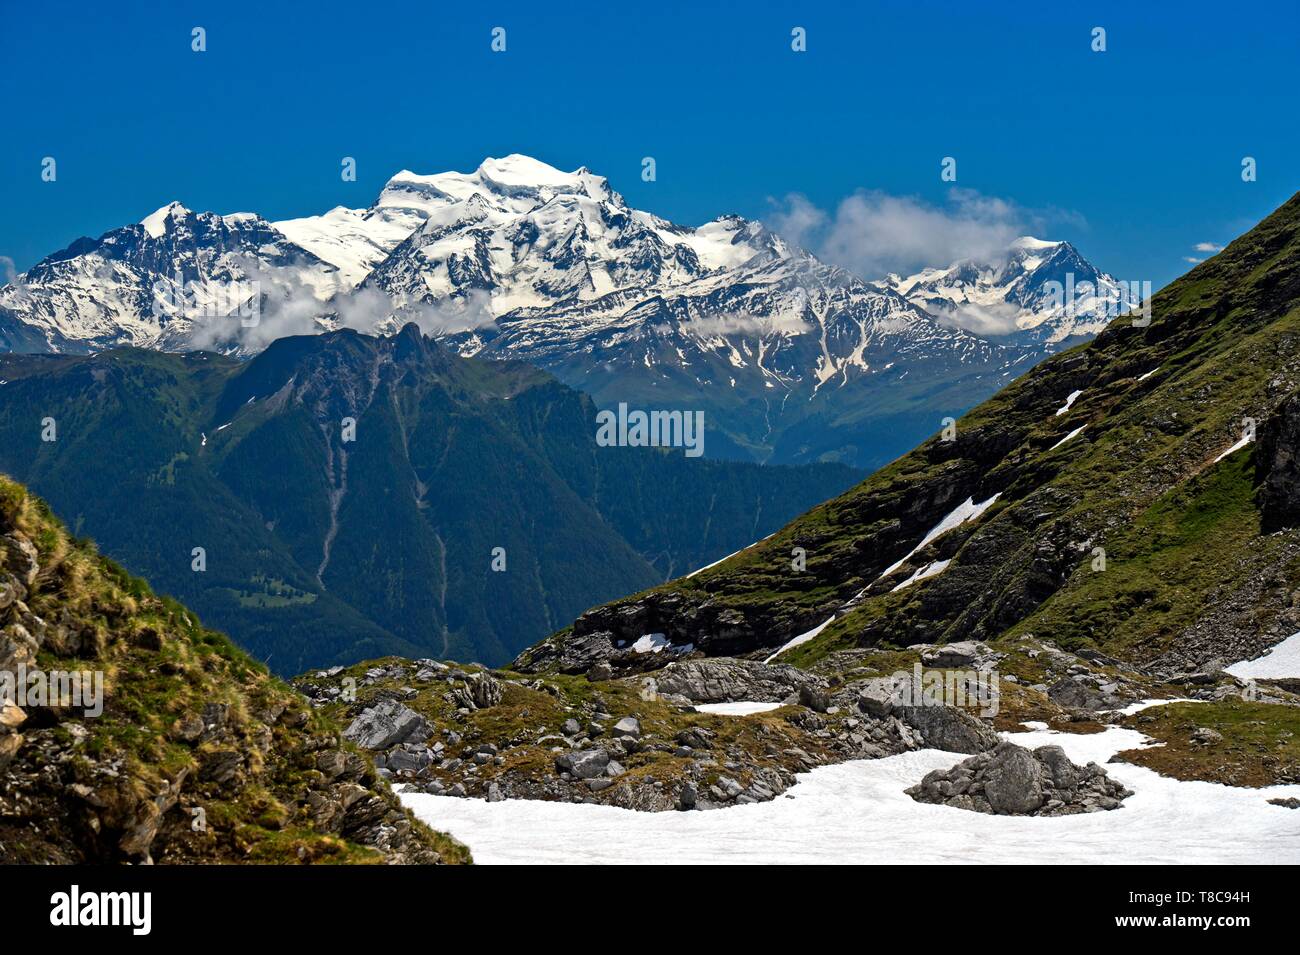 Massif du Grand Combin sur la vallée du Rhône, des pics de montagne avec de la neige, Valais, Valais, Suisse Banque D'Images